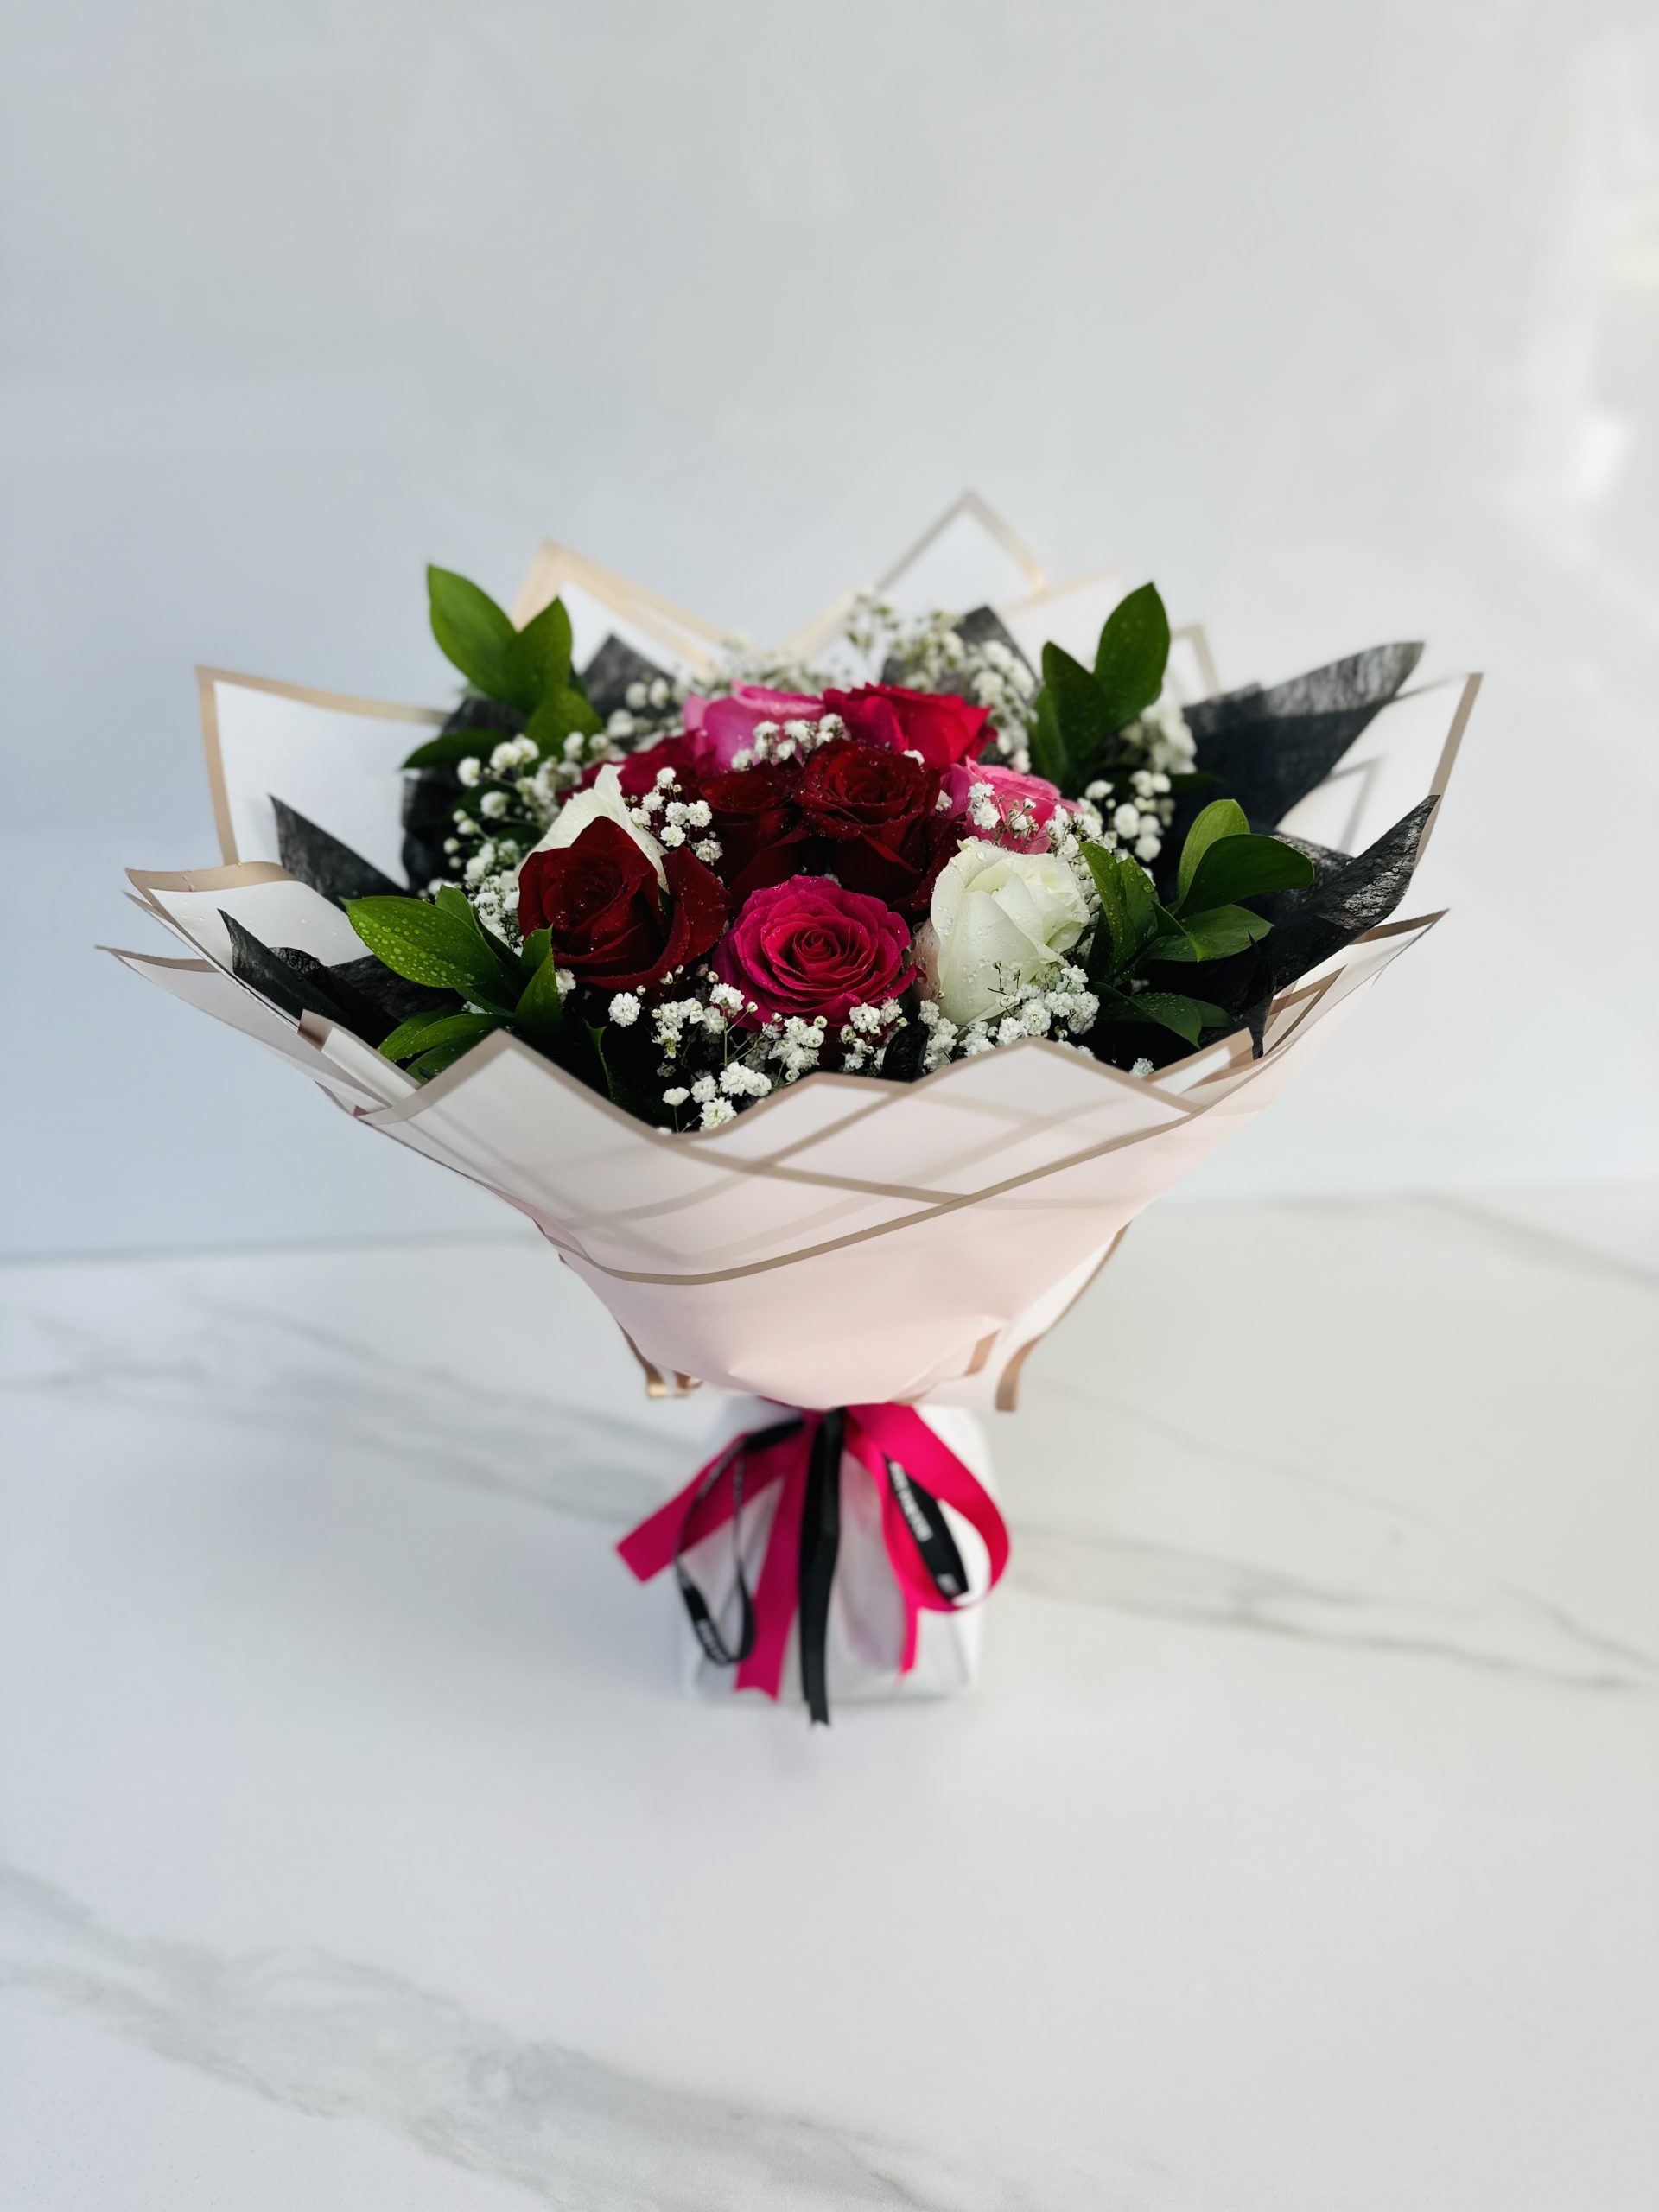 Mix Small Bouquet | Flower Gift Center